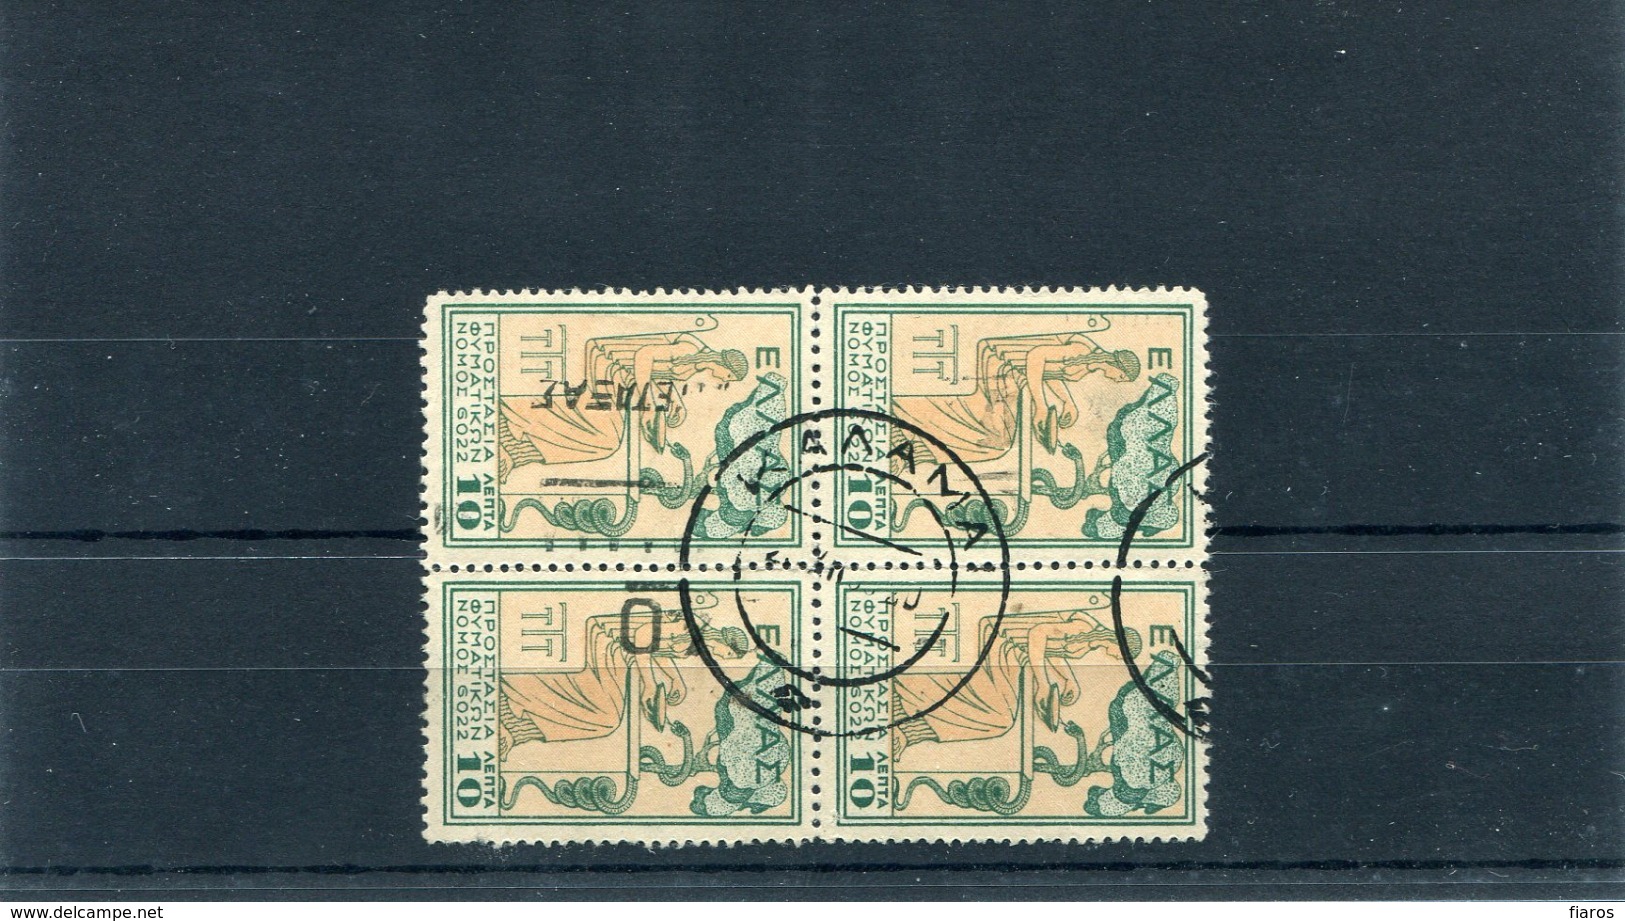 1935-Greece- "Postal Staff Anti-Tuberculosis Fund" With "ELLAS" Charity- 10l. Used In Block Of 4, W/ "Kalamai" XVII Pmrk - Liefdadigheid